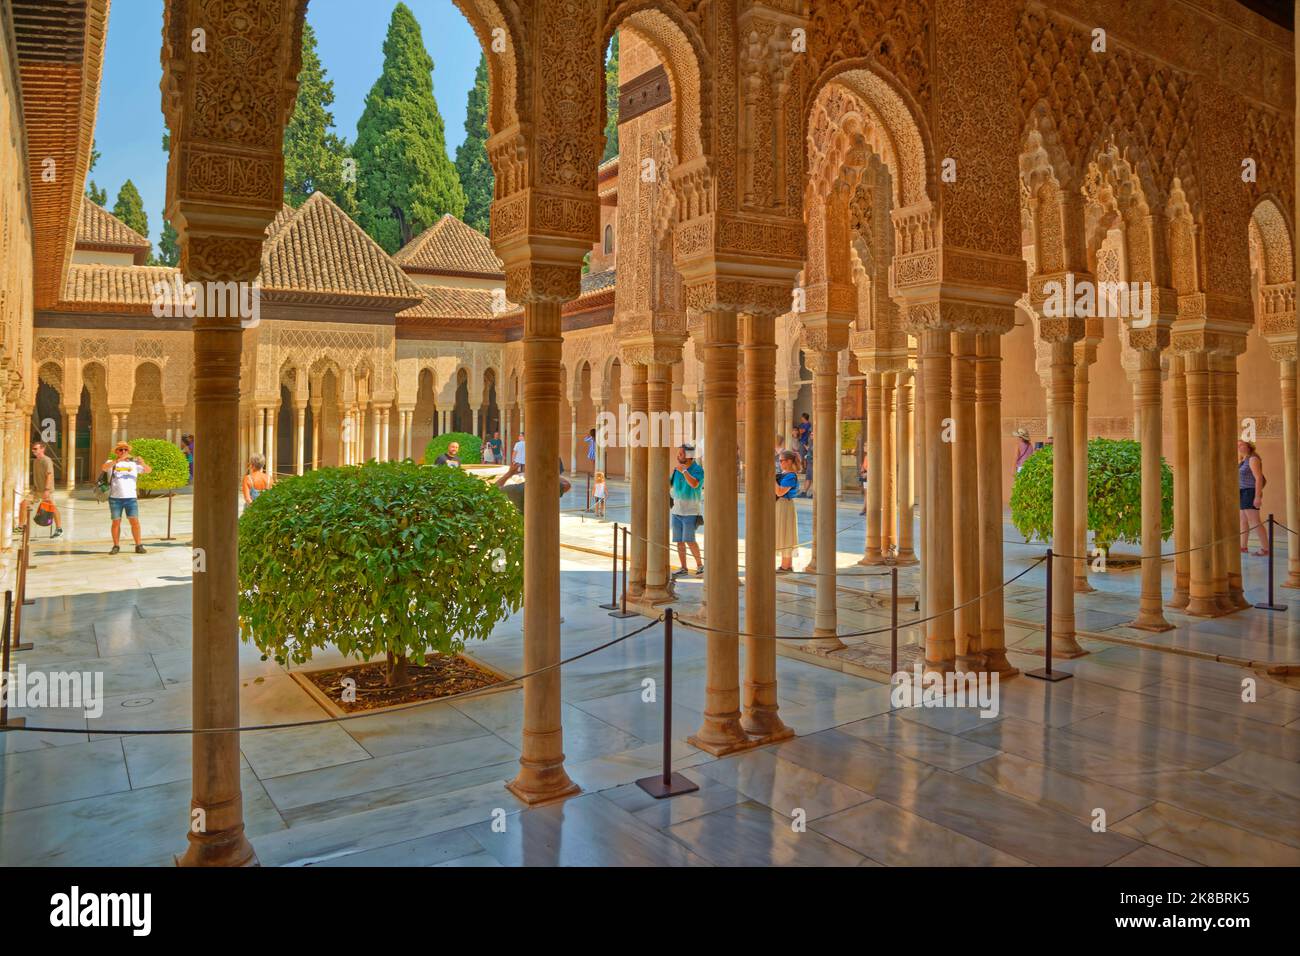 Der Palast der Löwen, einer der 3 wichtigsten Paläste des Palastkomplexes Alhambra in Granada, Andalusien, Spanien. Stockfoto